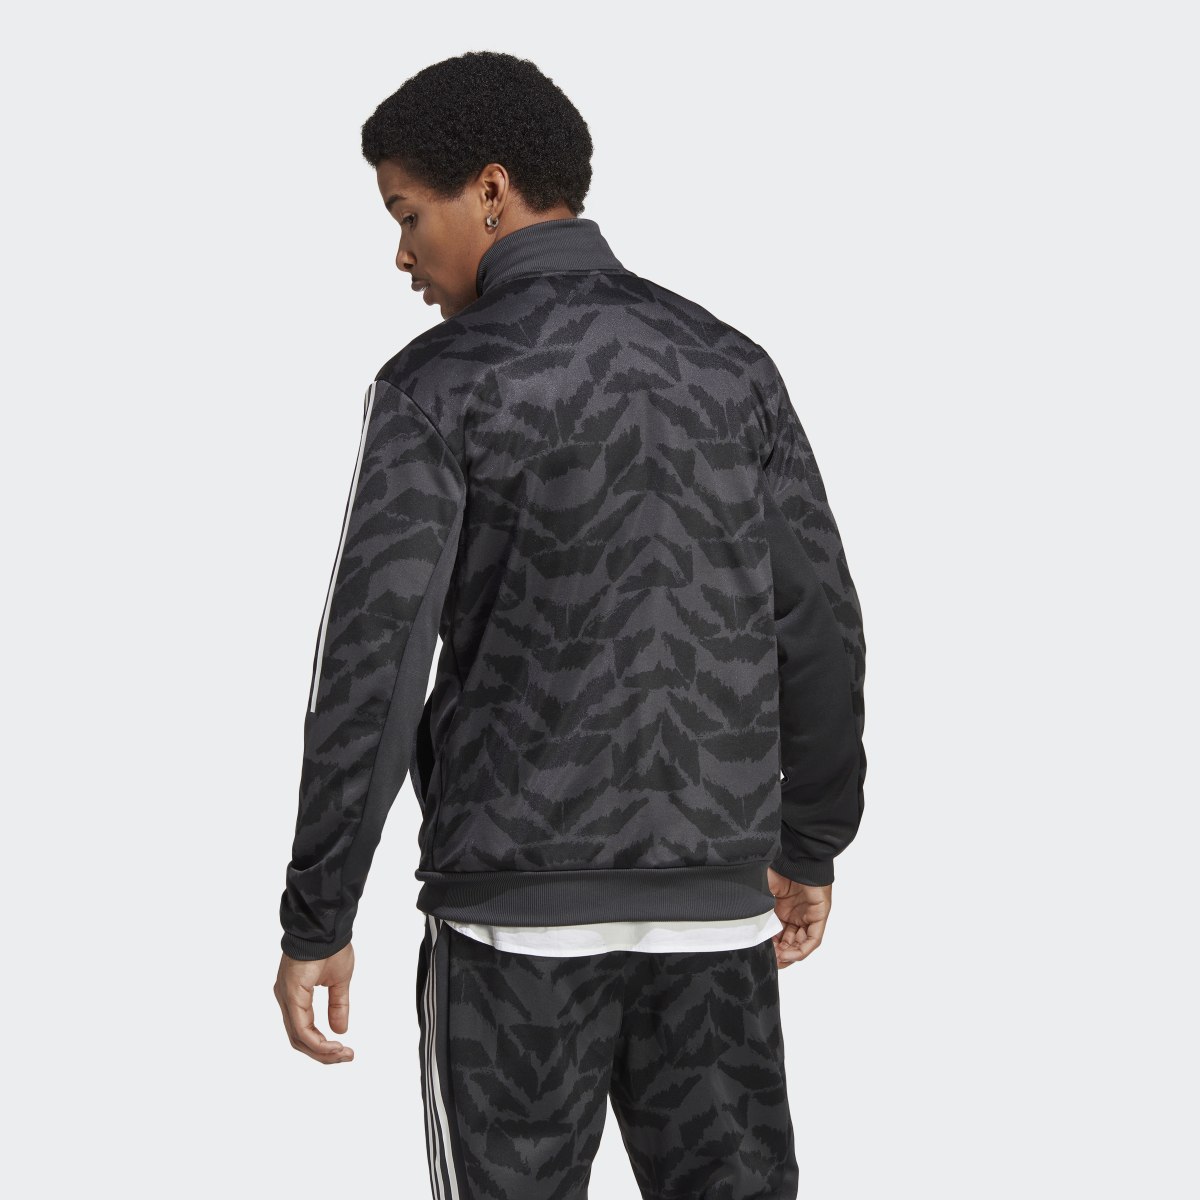 Adidas Tiro Suit Up Track Jacket. 5